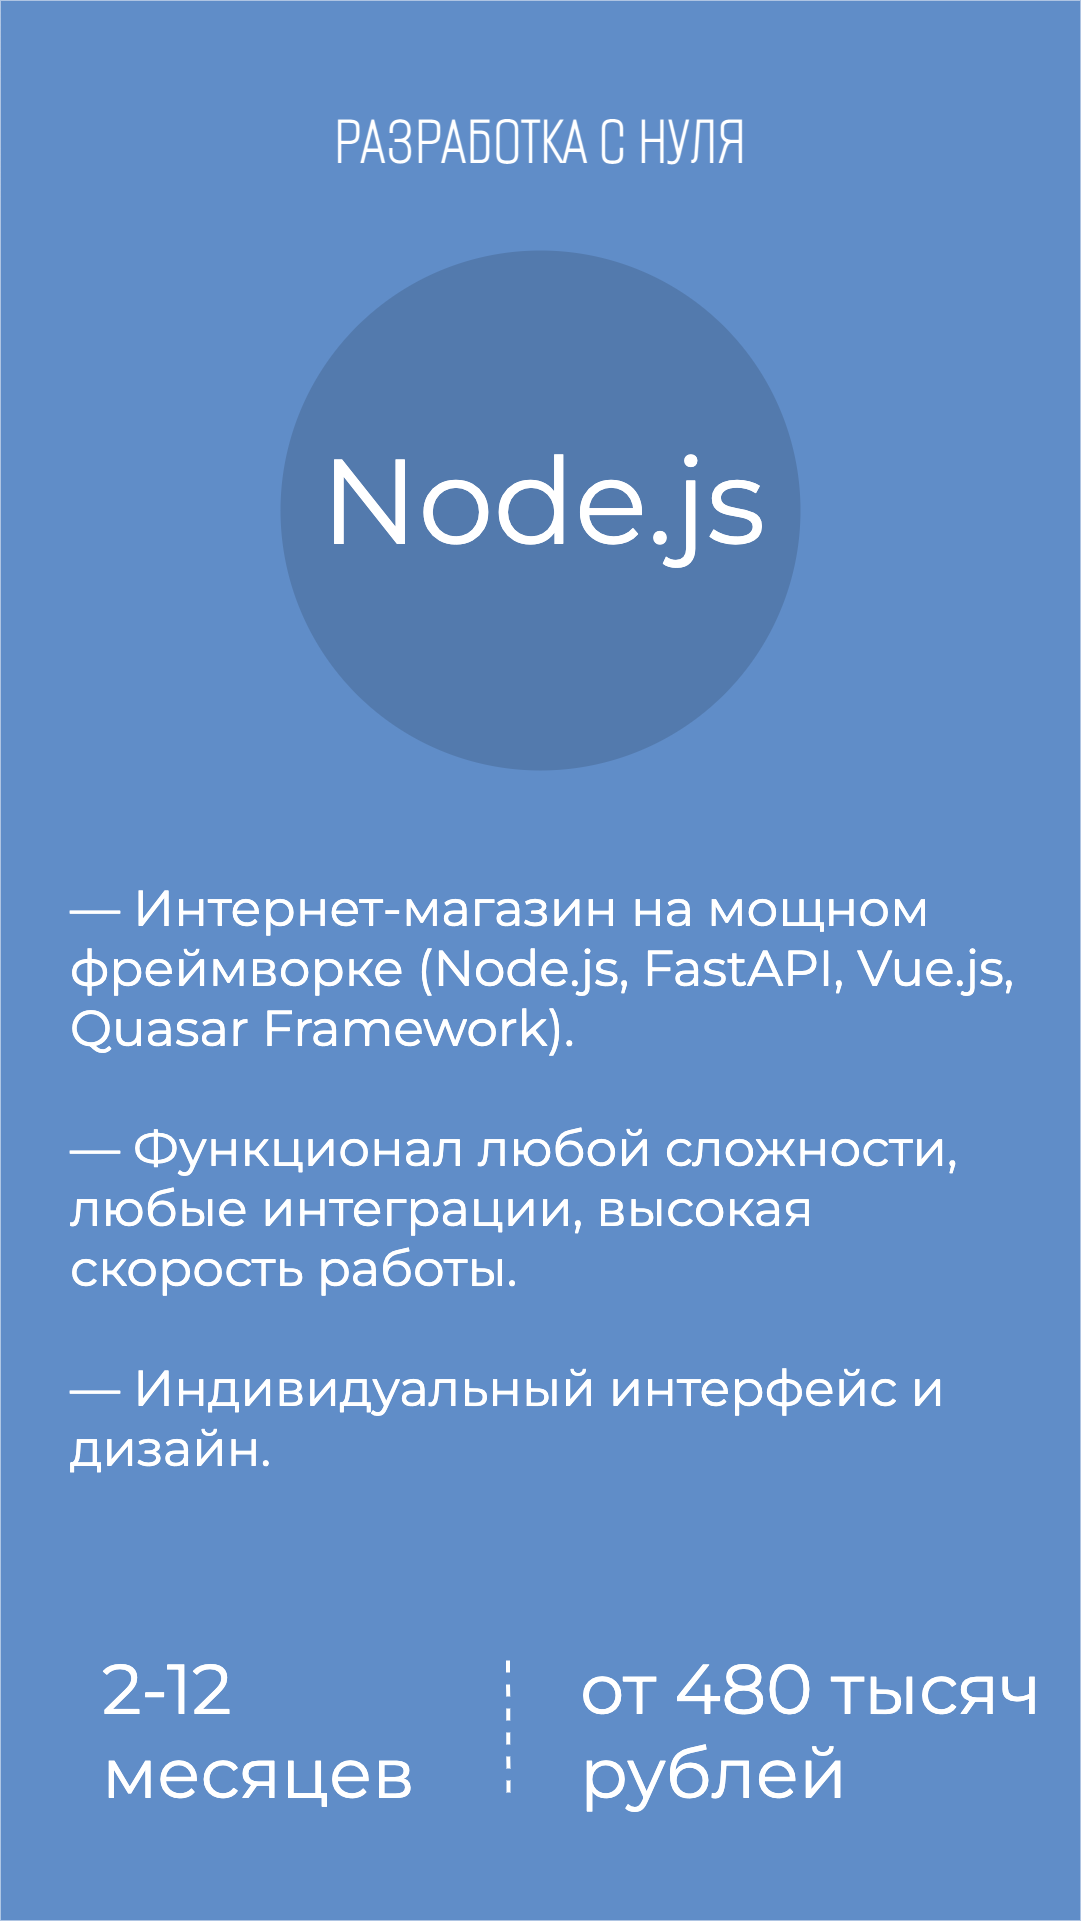 Сколько стоит разработать создать интернет-магазин на Node.js